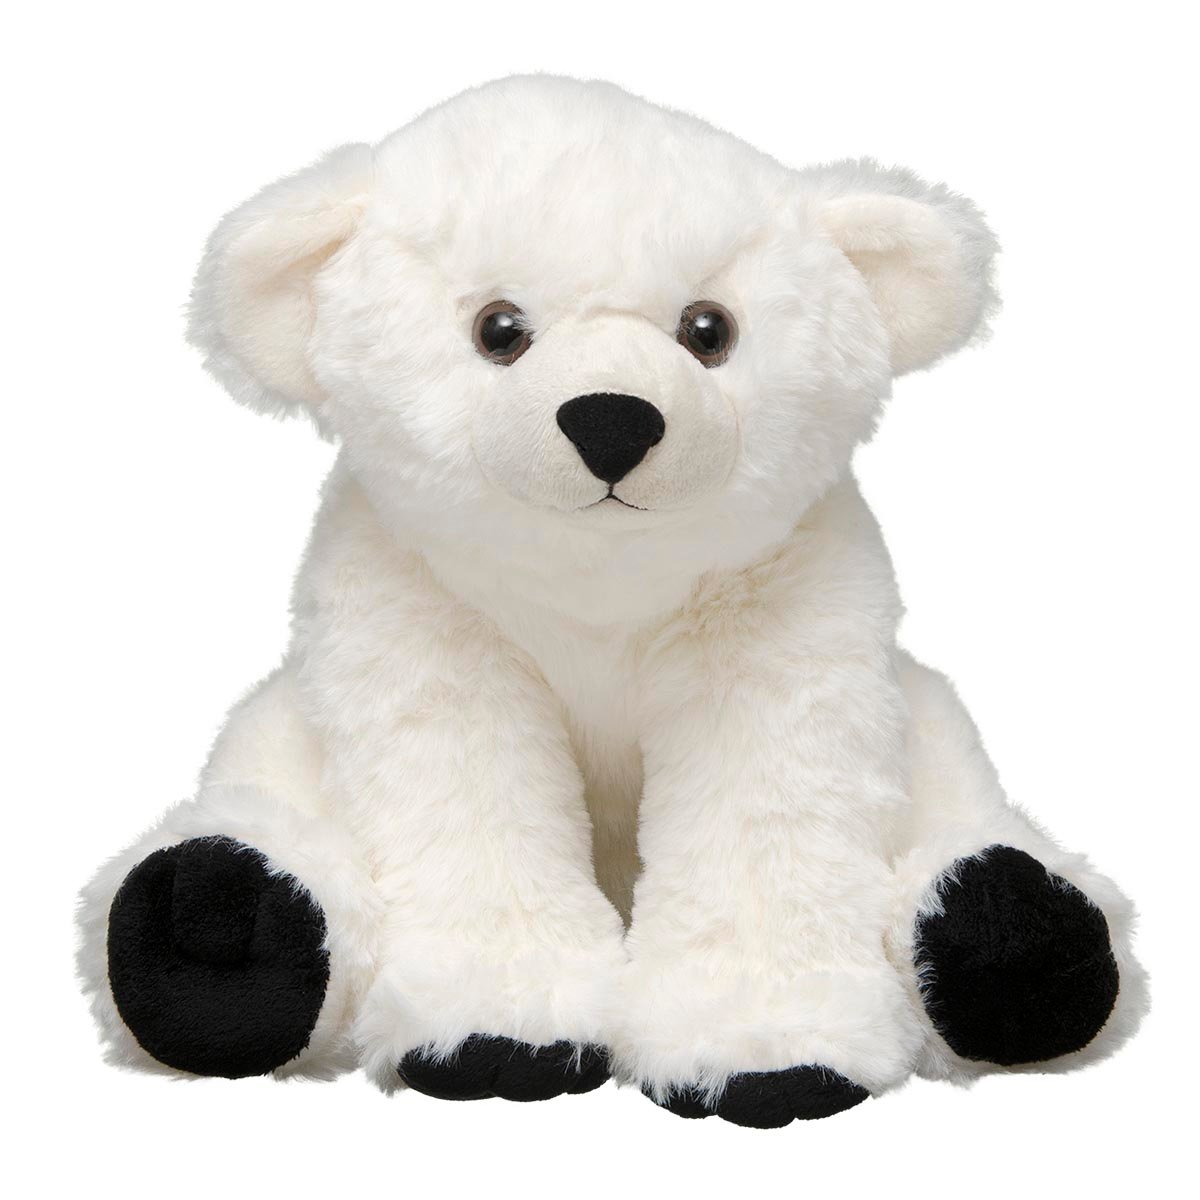 polar bear toy